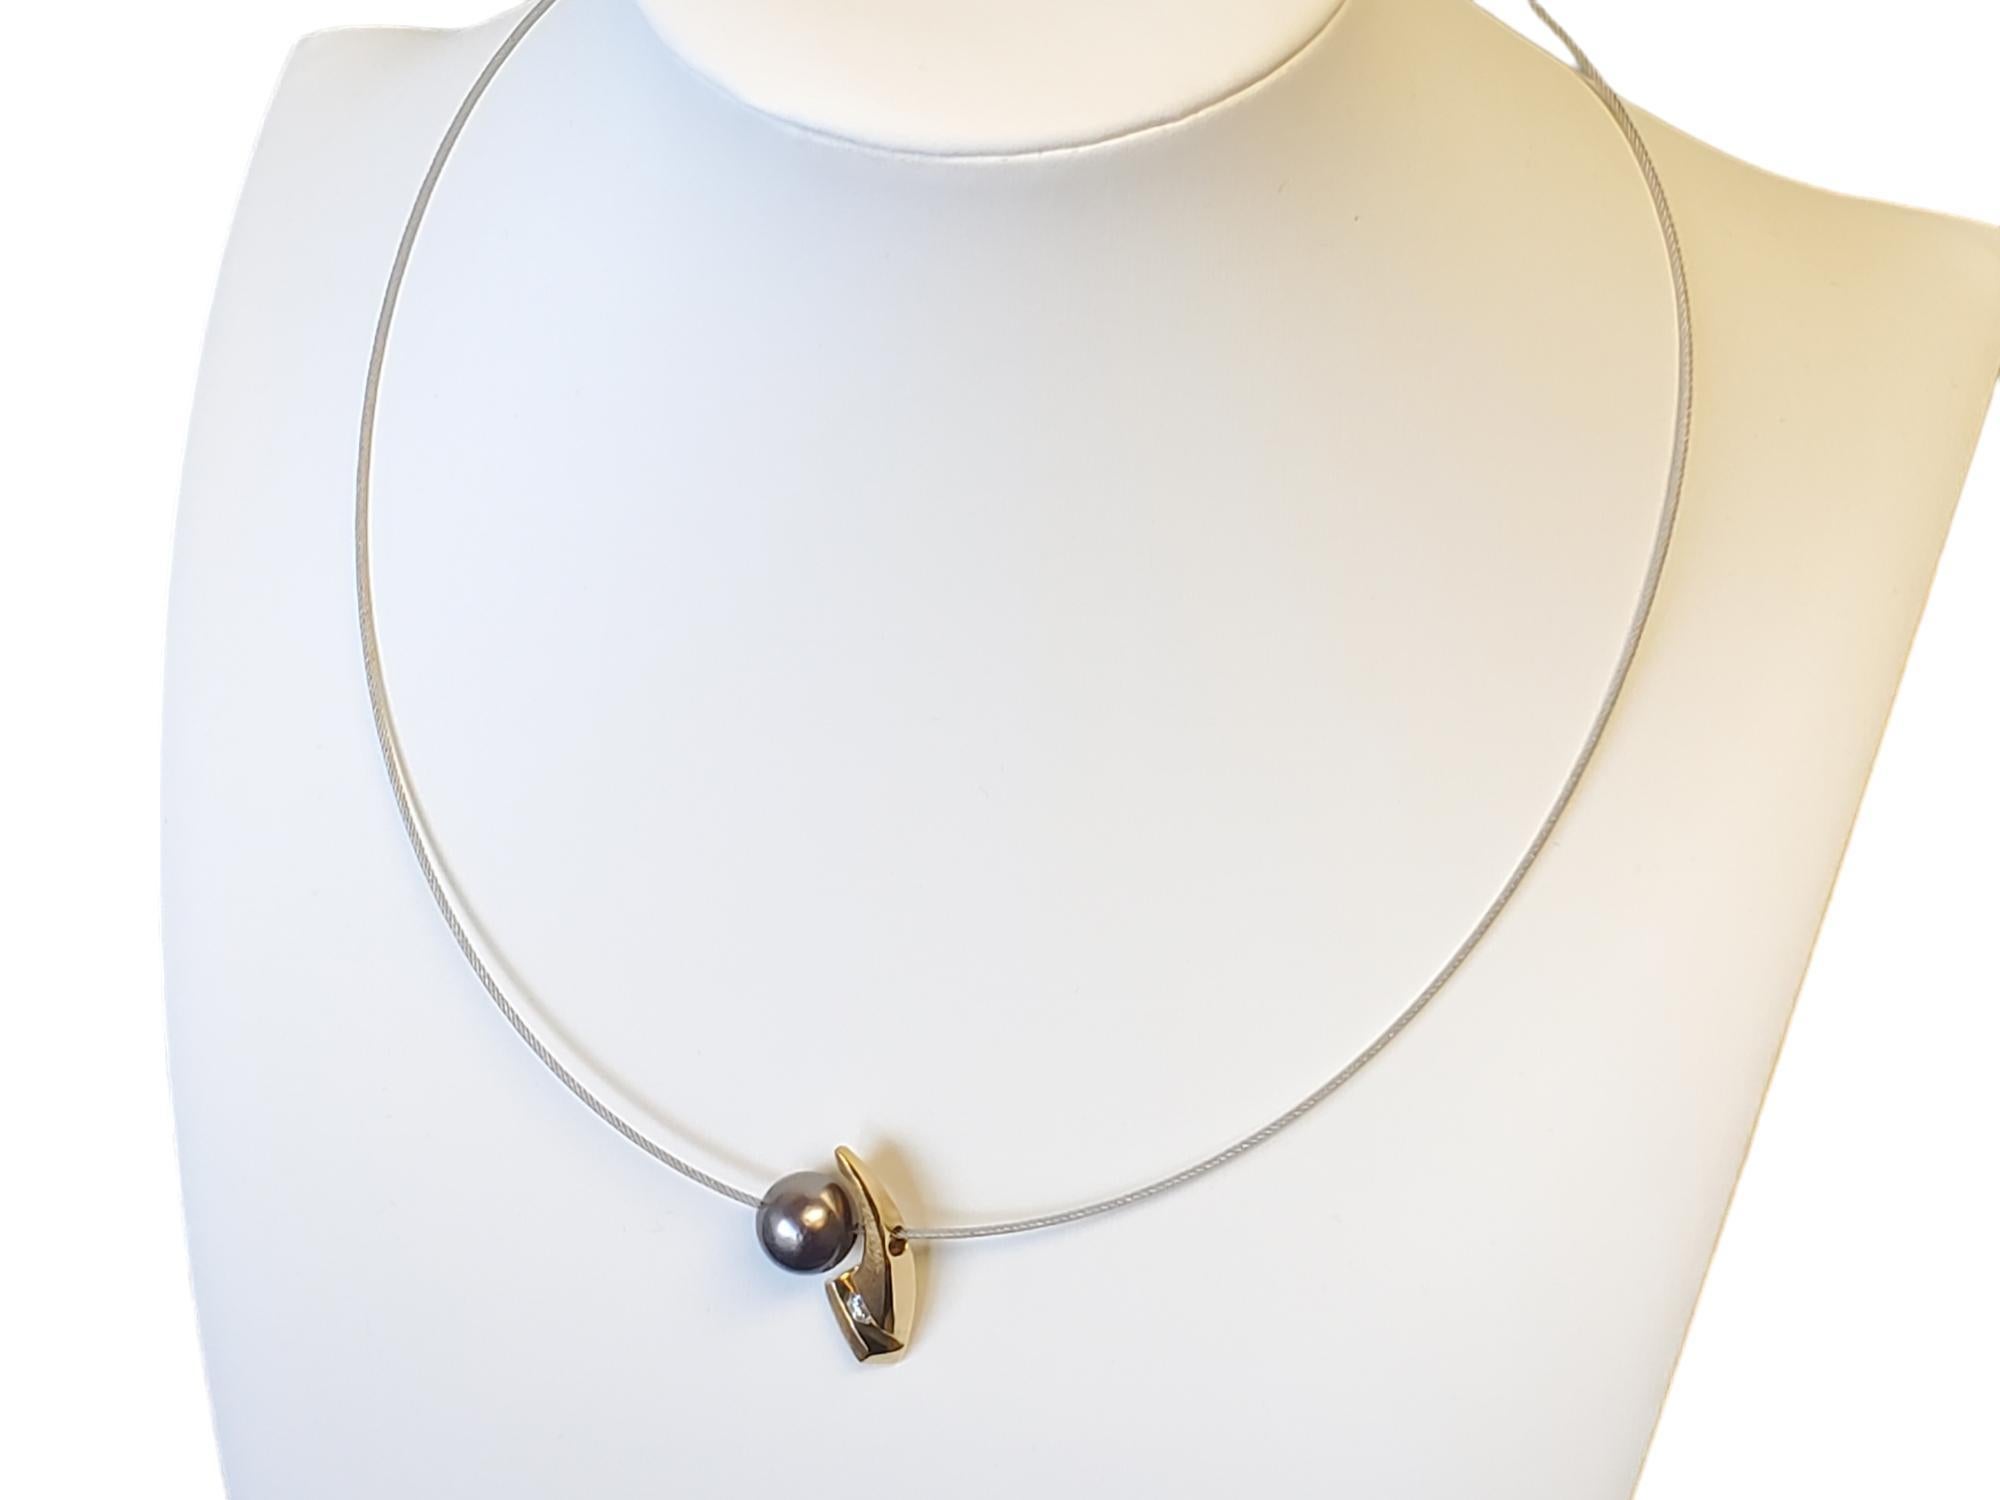 18k Designer Tahiti-Perlen-Diamant-Stahl-Kabel-Halskette

Aufgelistet ist ein sehr schickes modernes 18k / Stahl-Kabel-Halskette mit einem 18k Anhänger Folie, die die Seite dieser schönen 10,7 mm Tahiti-Perle Formen. Der Diamant des Anhängers hat